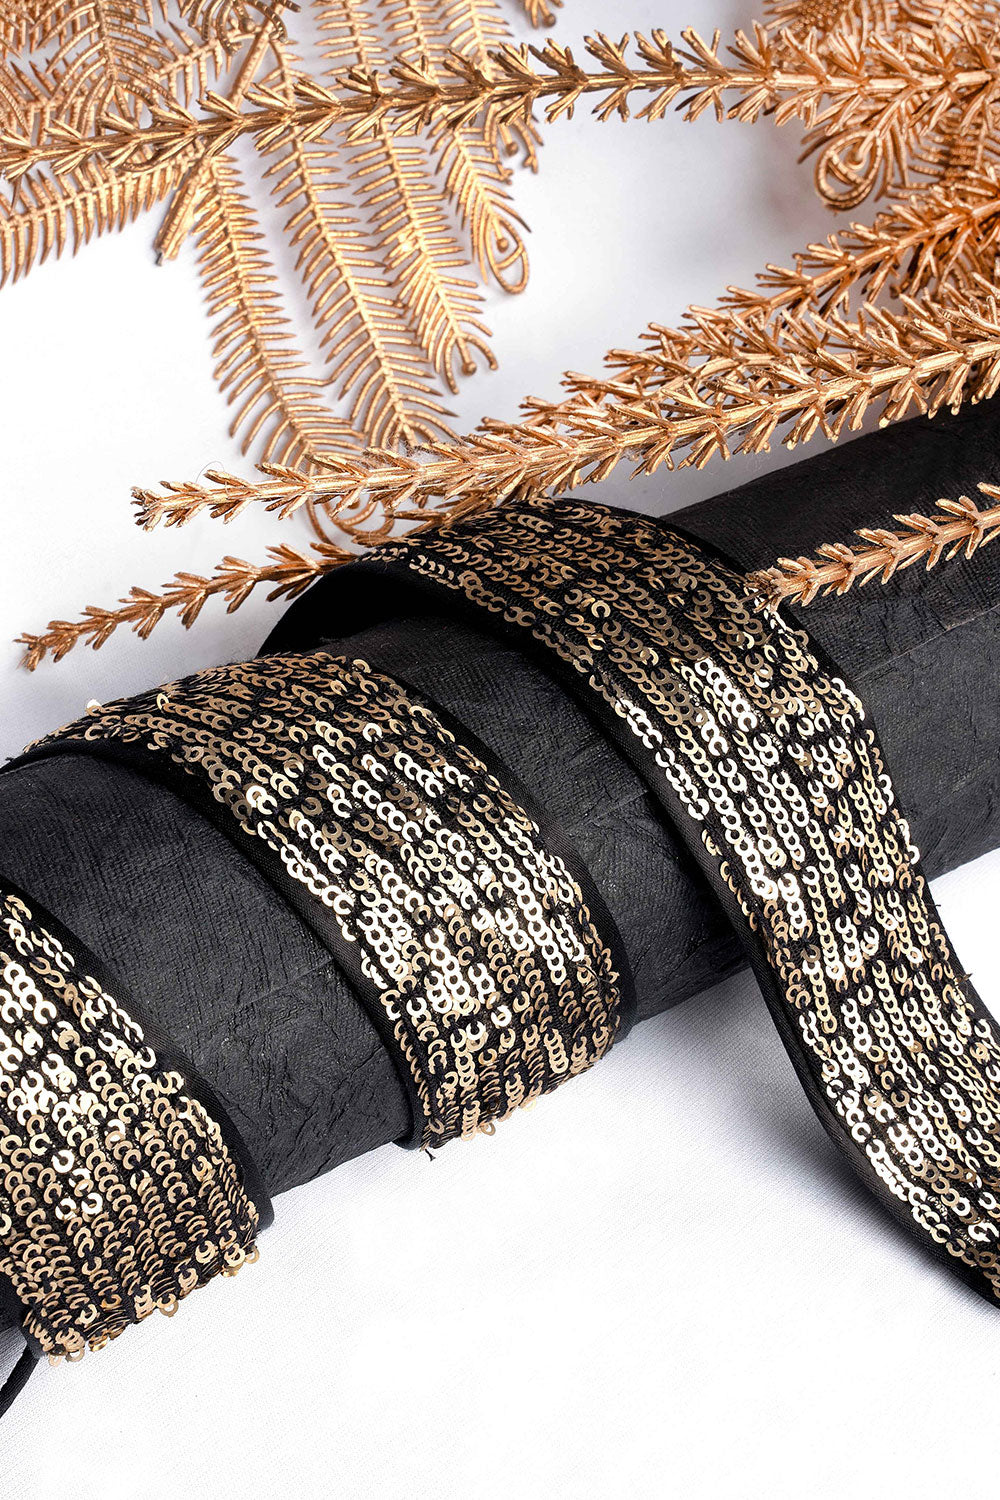 Buy Zoya Antique Gold Sequins on Black Tie Belt for Saree & Dresses Online